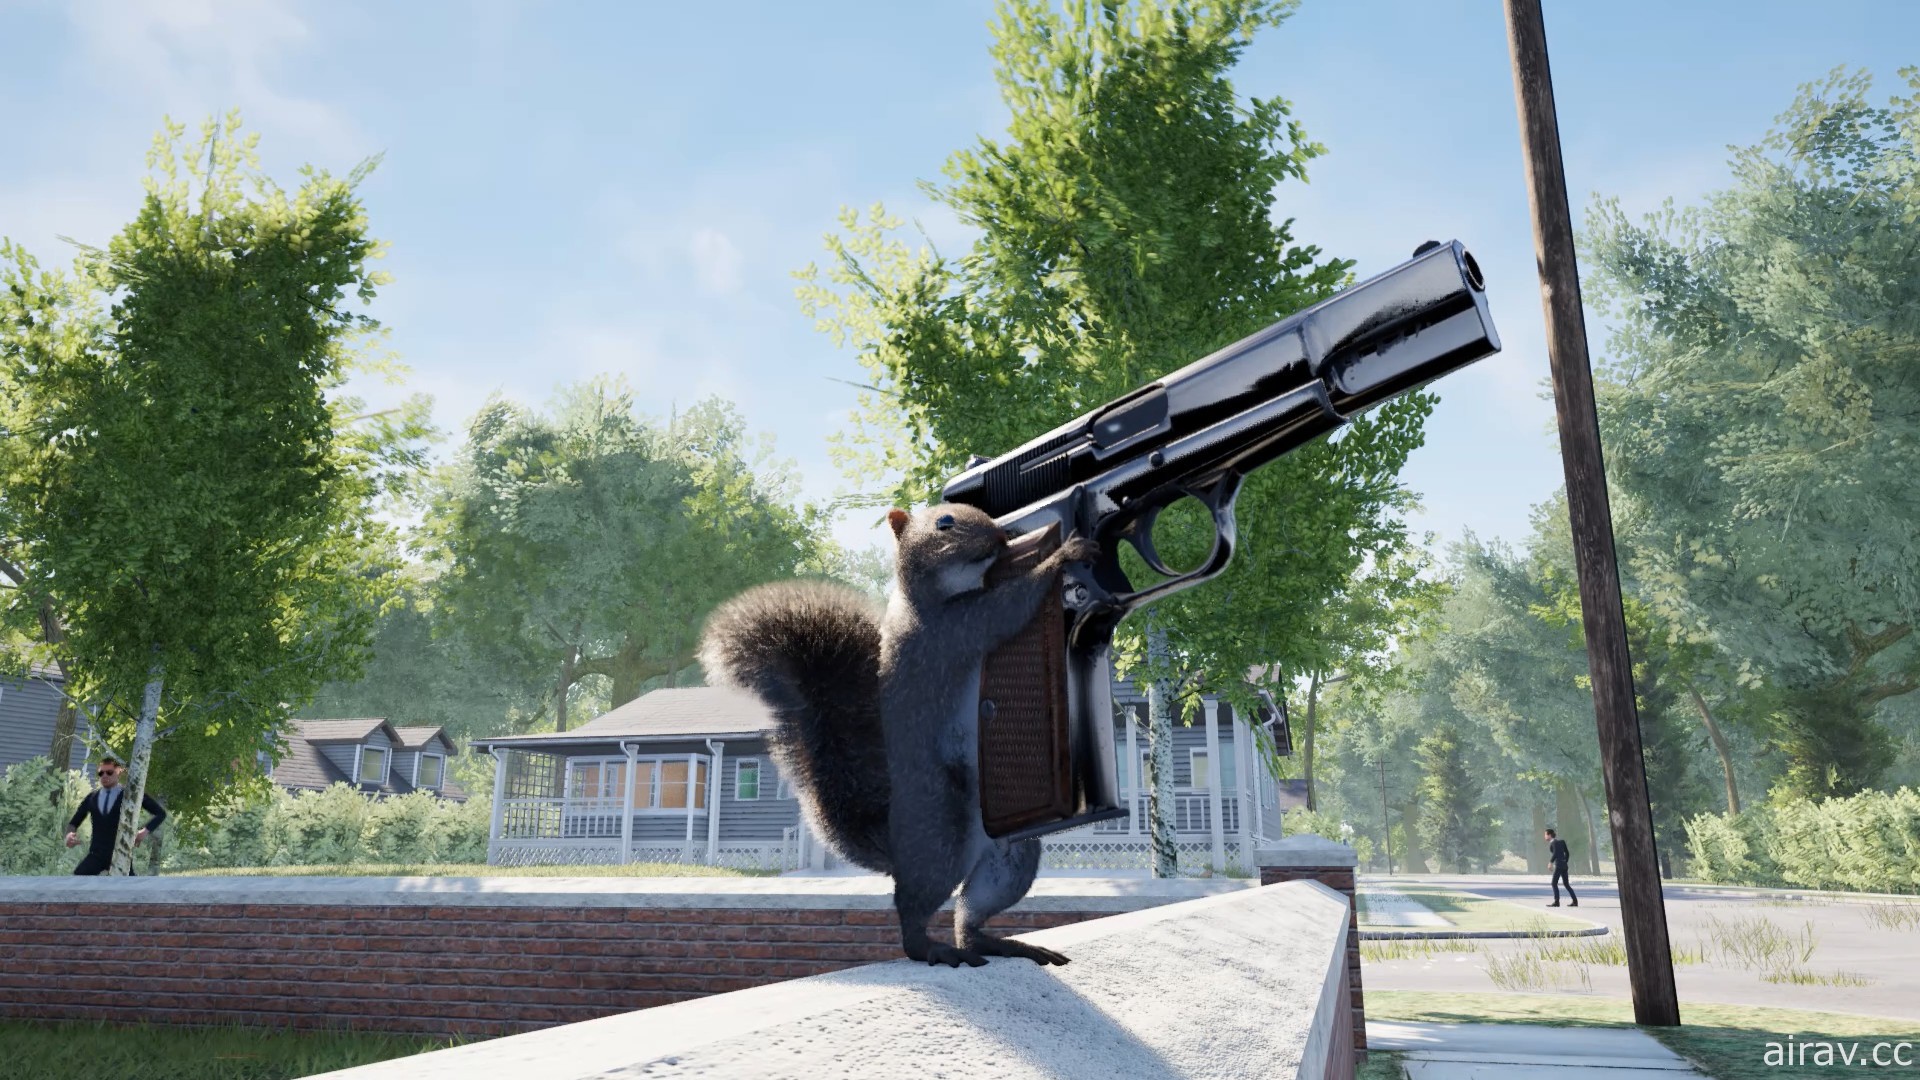 《持枪松鼠》让你化身松鼠使用武器对抗特务